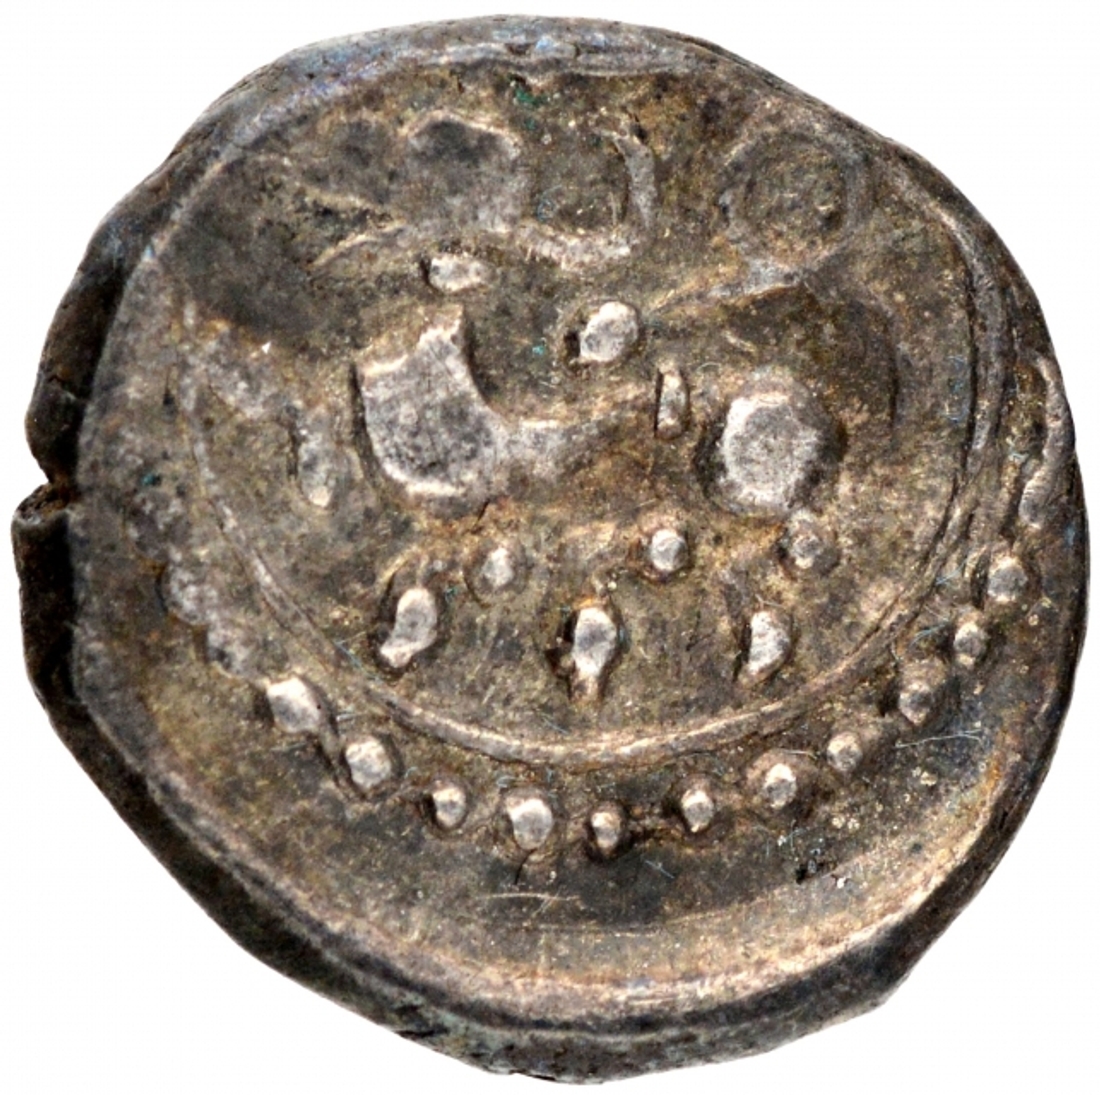 Silver Ten Rattis Coin of Saluvamalla of Vijayanagara Empire.